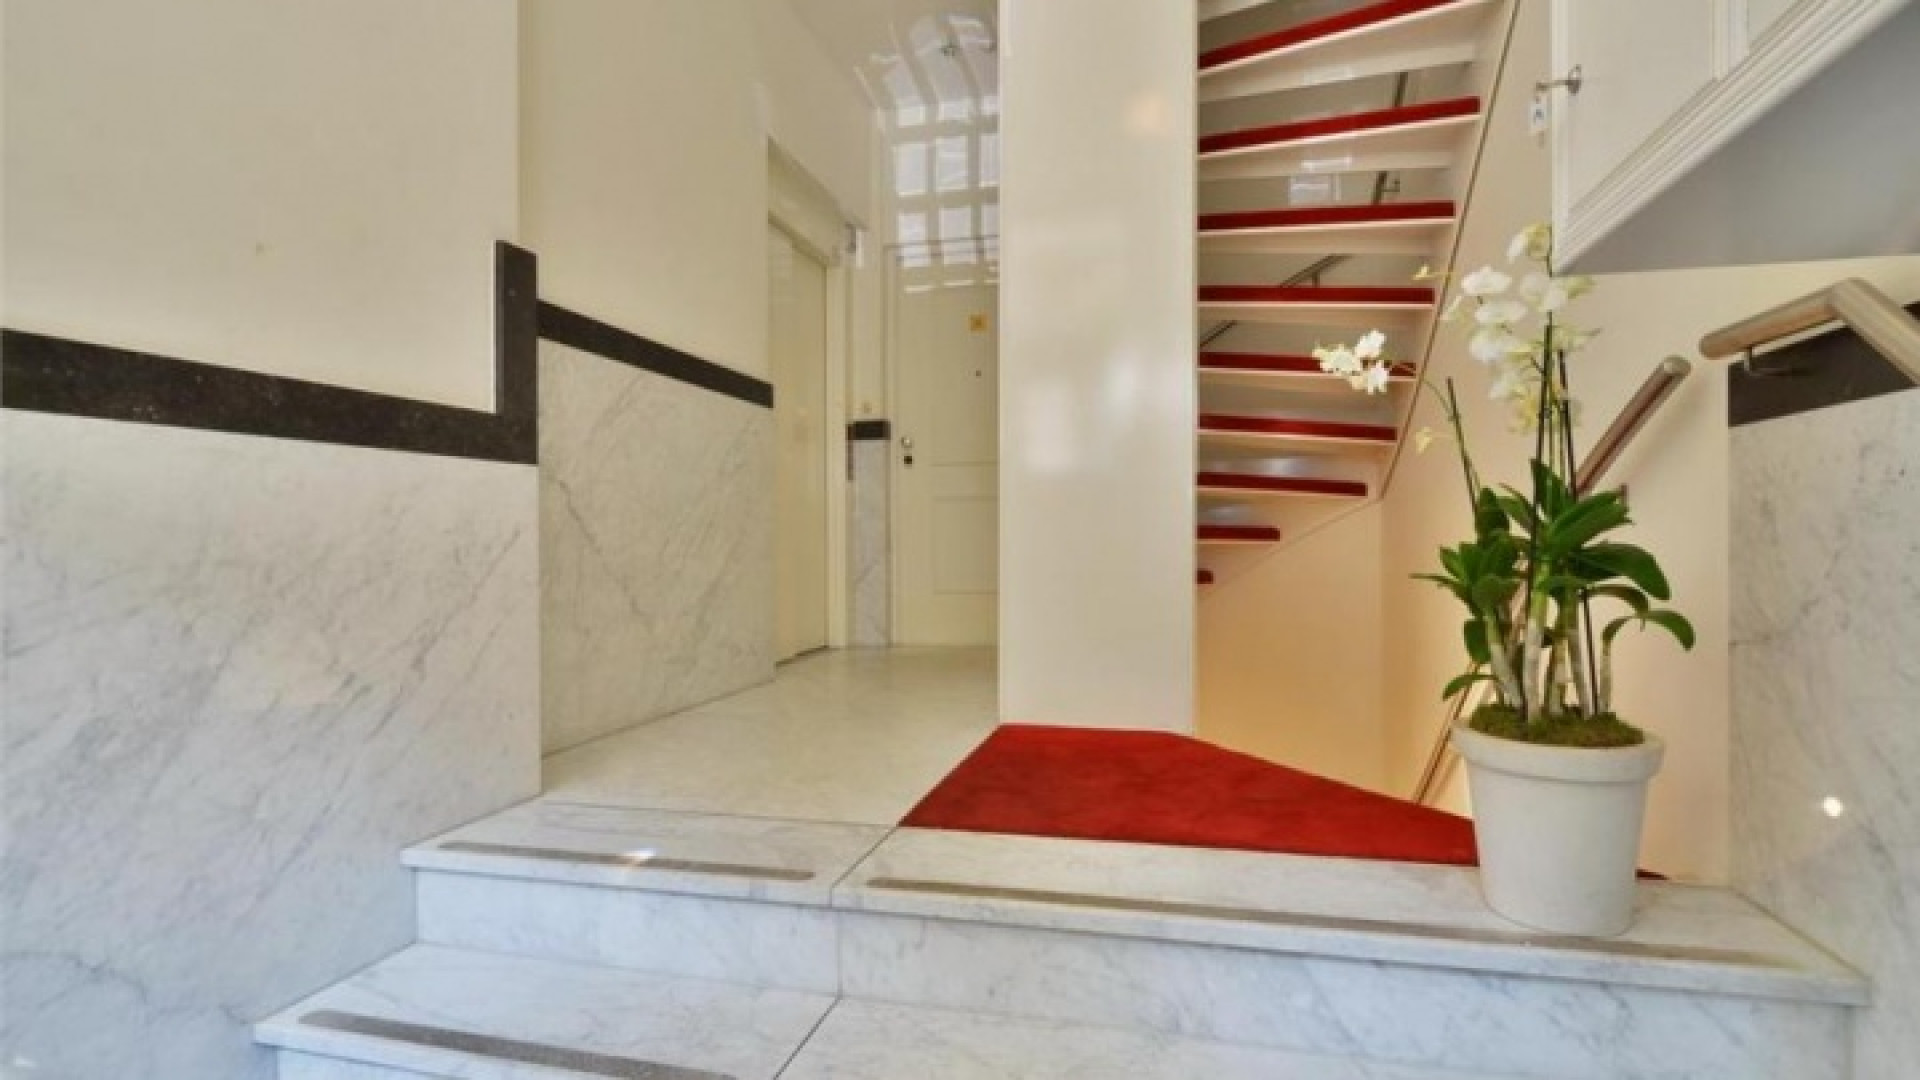 Frank Rijkaard zoekt huurder voor zijn luxe dubbele bovenhuis. Zie foto's 3